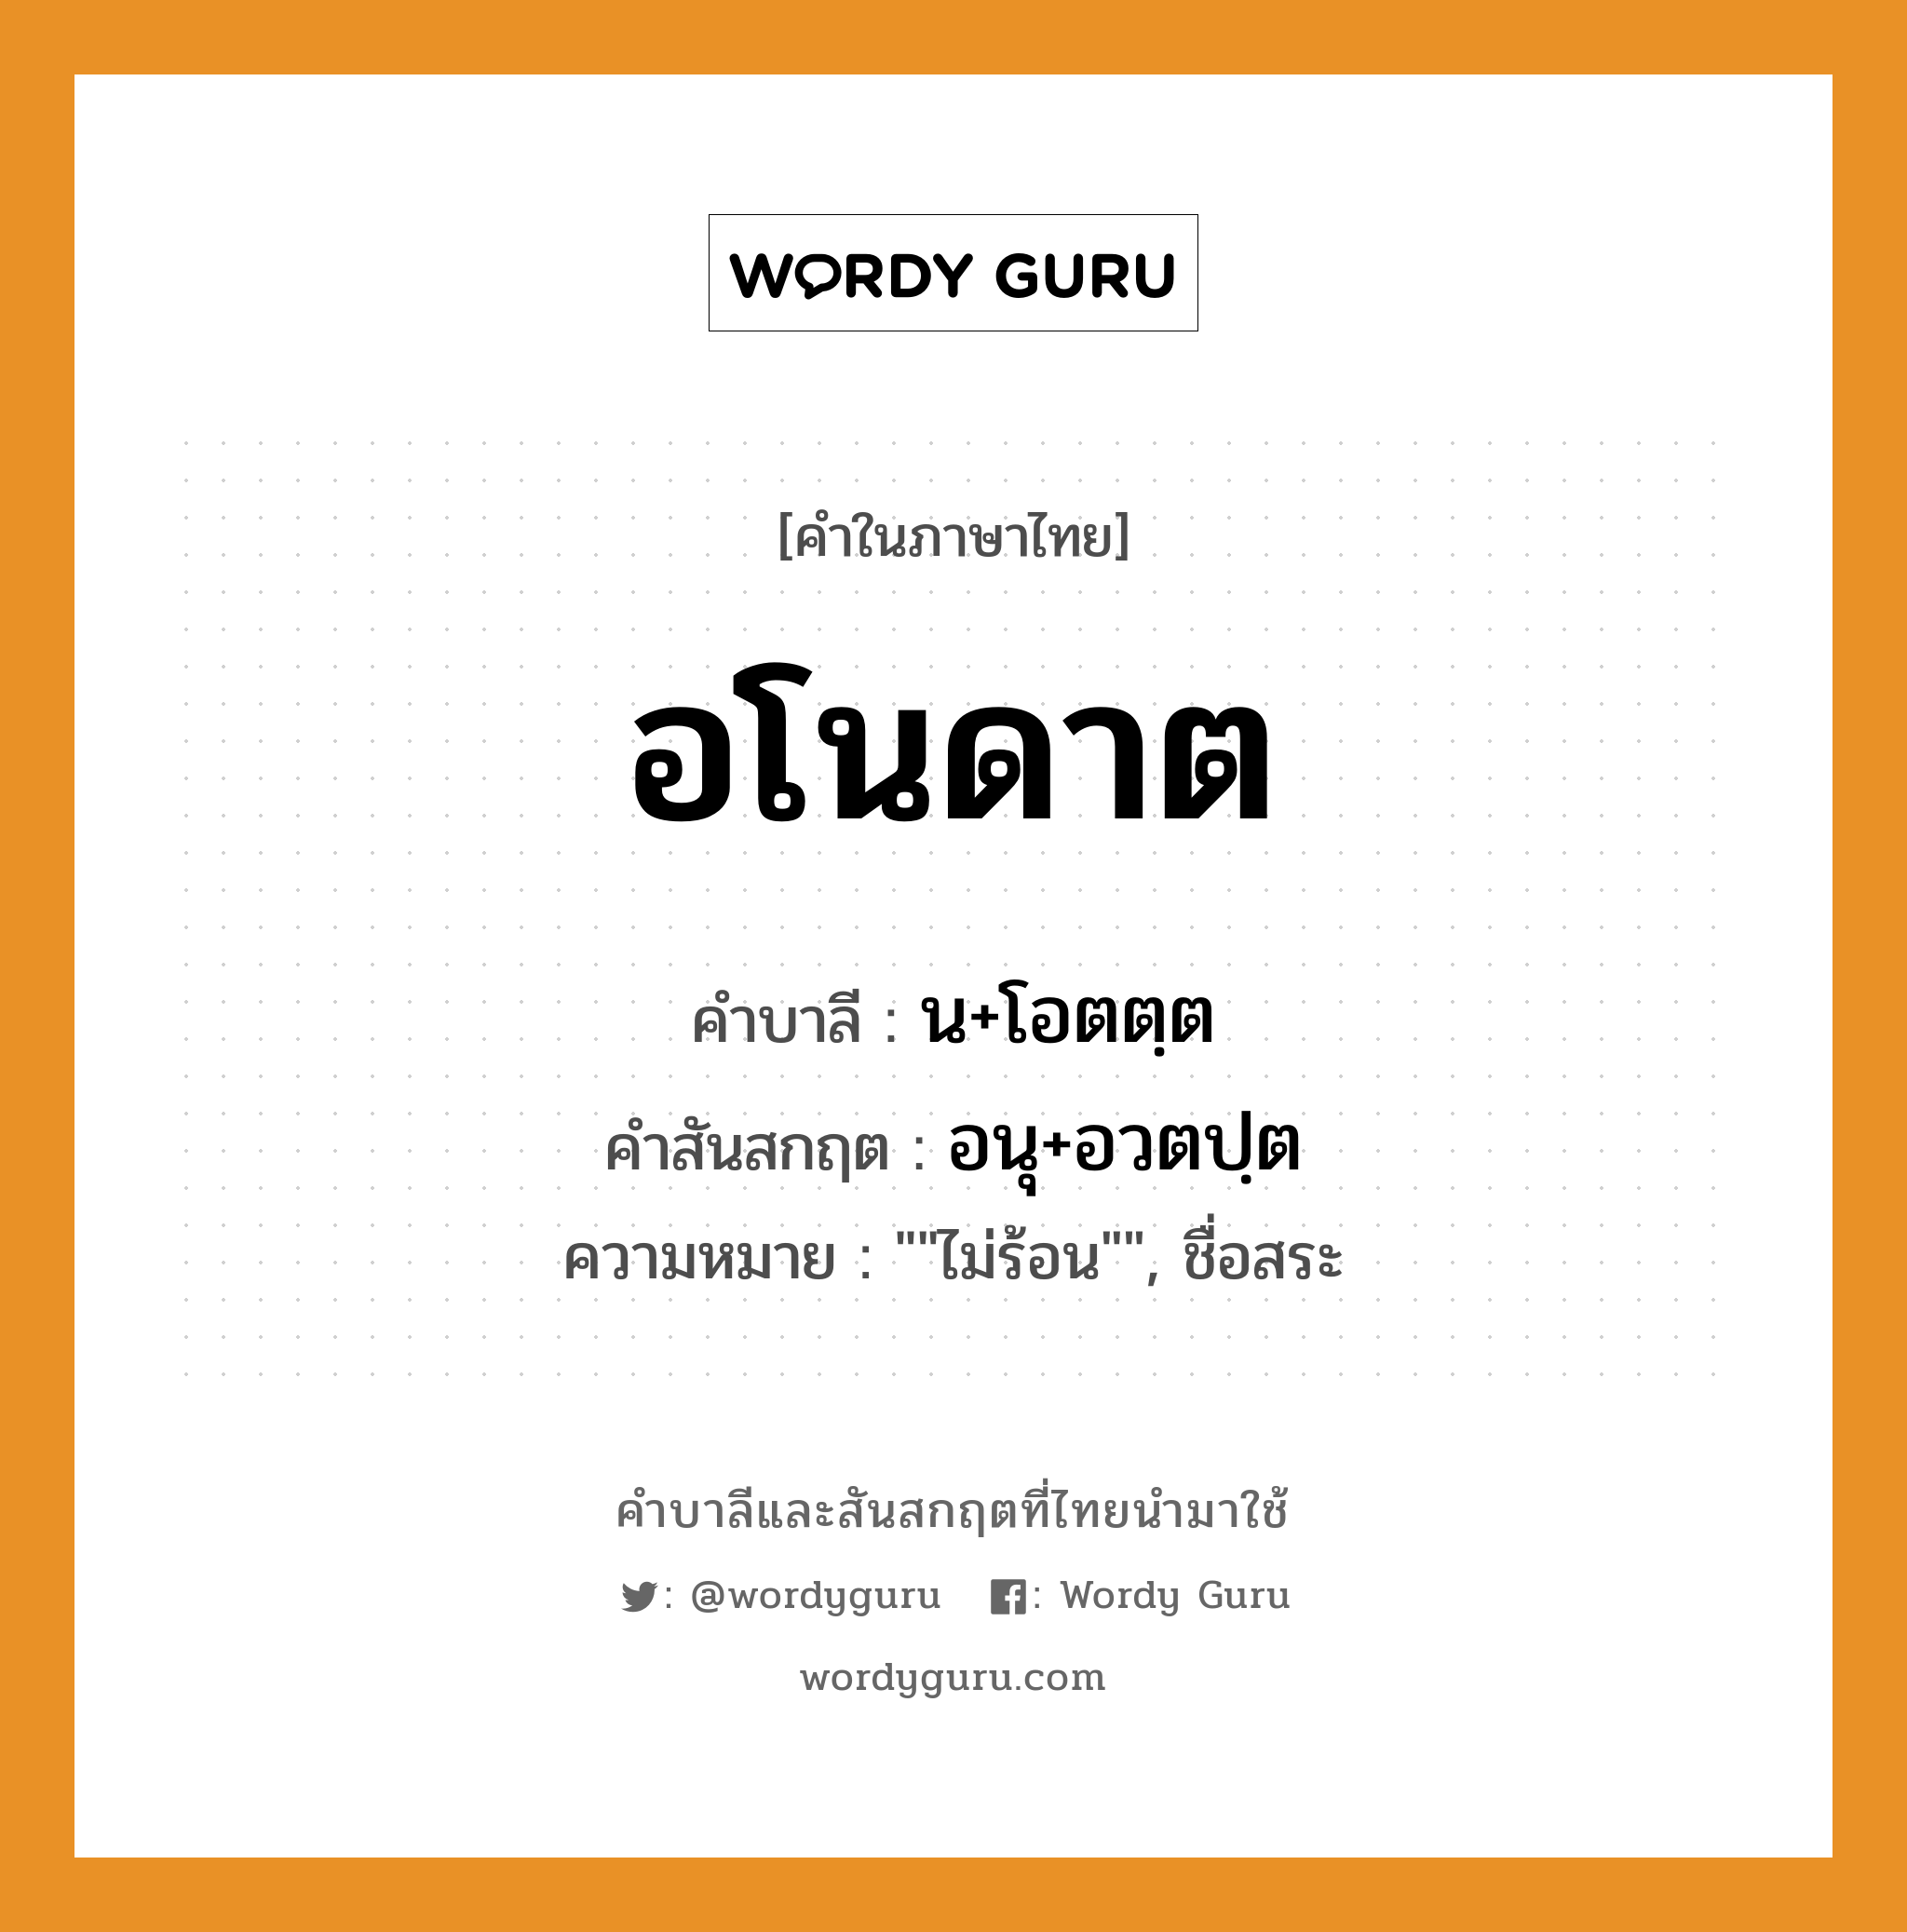 อโนดาต บาลี สันสกฤต?, คำบาลีและสันสกฤต อโนดาต คำในภาษาไทย อโนดาต คำบาลี น+โอตตฺต คำสันสกฤต อนุ+อวตปฺต ความหมาย ""ไม่ร้อน"", ชื่อสระ